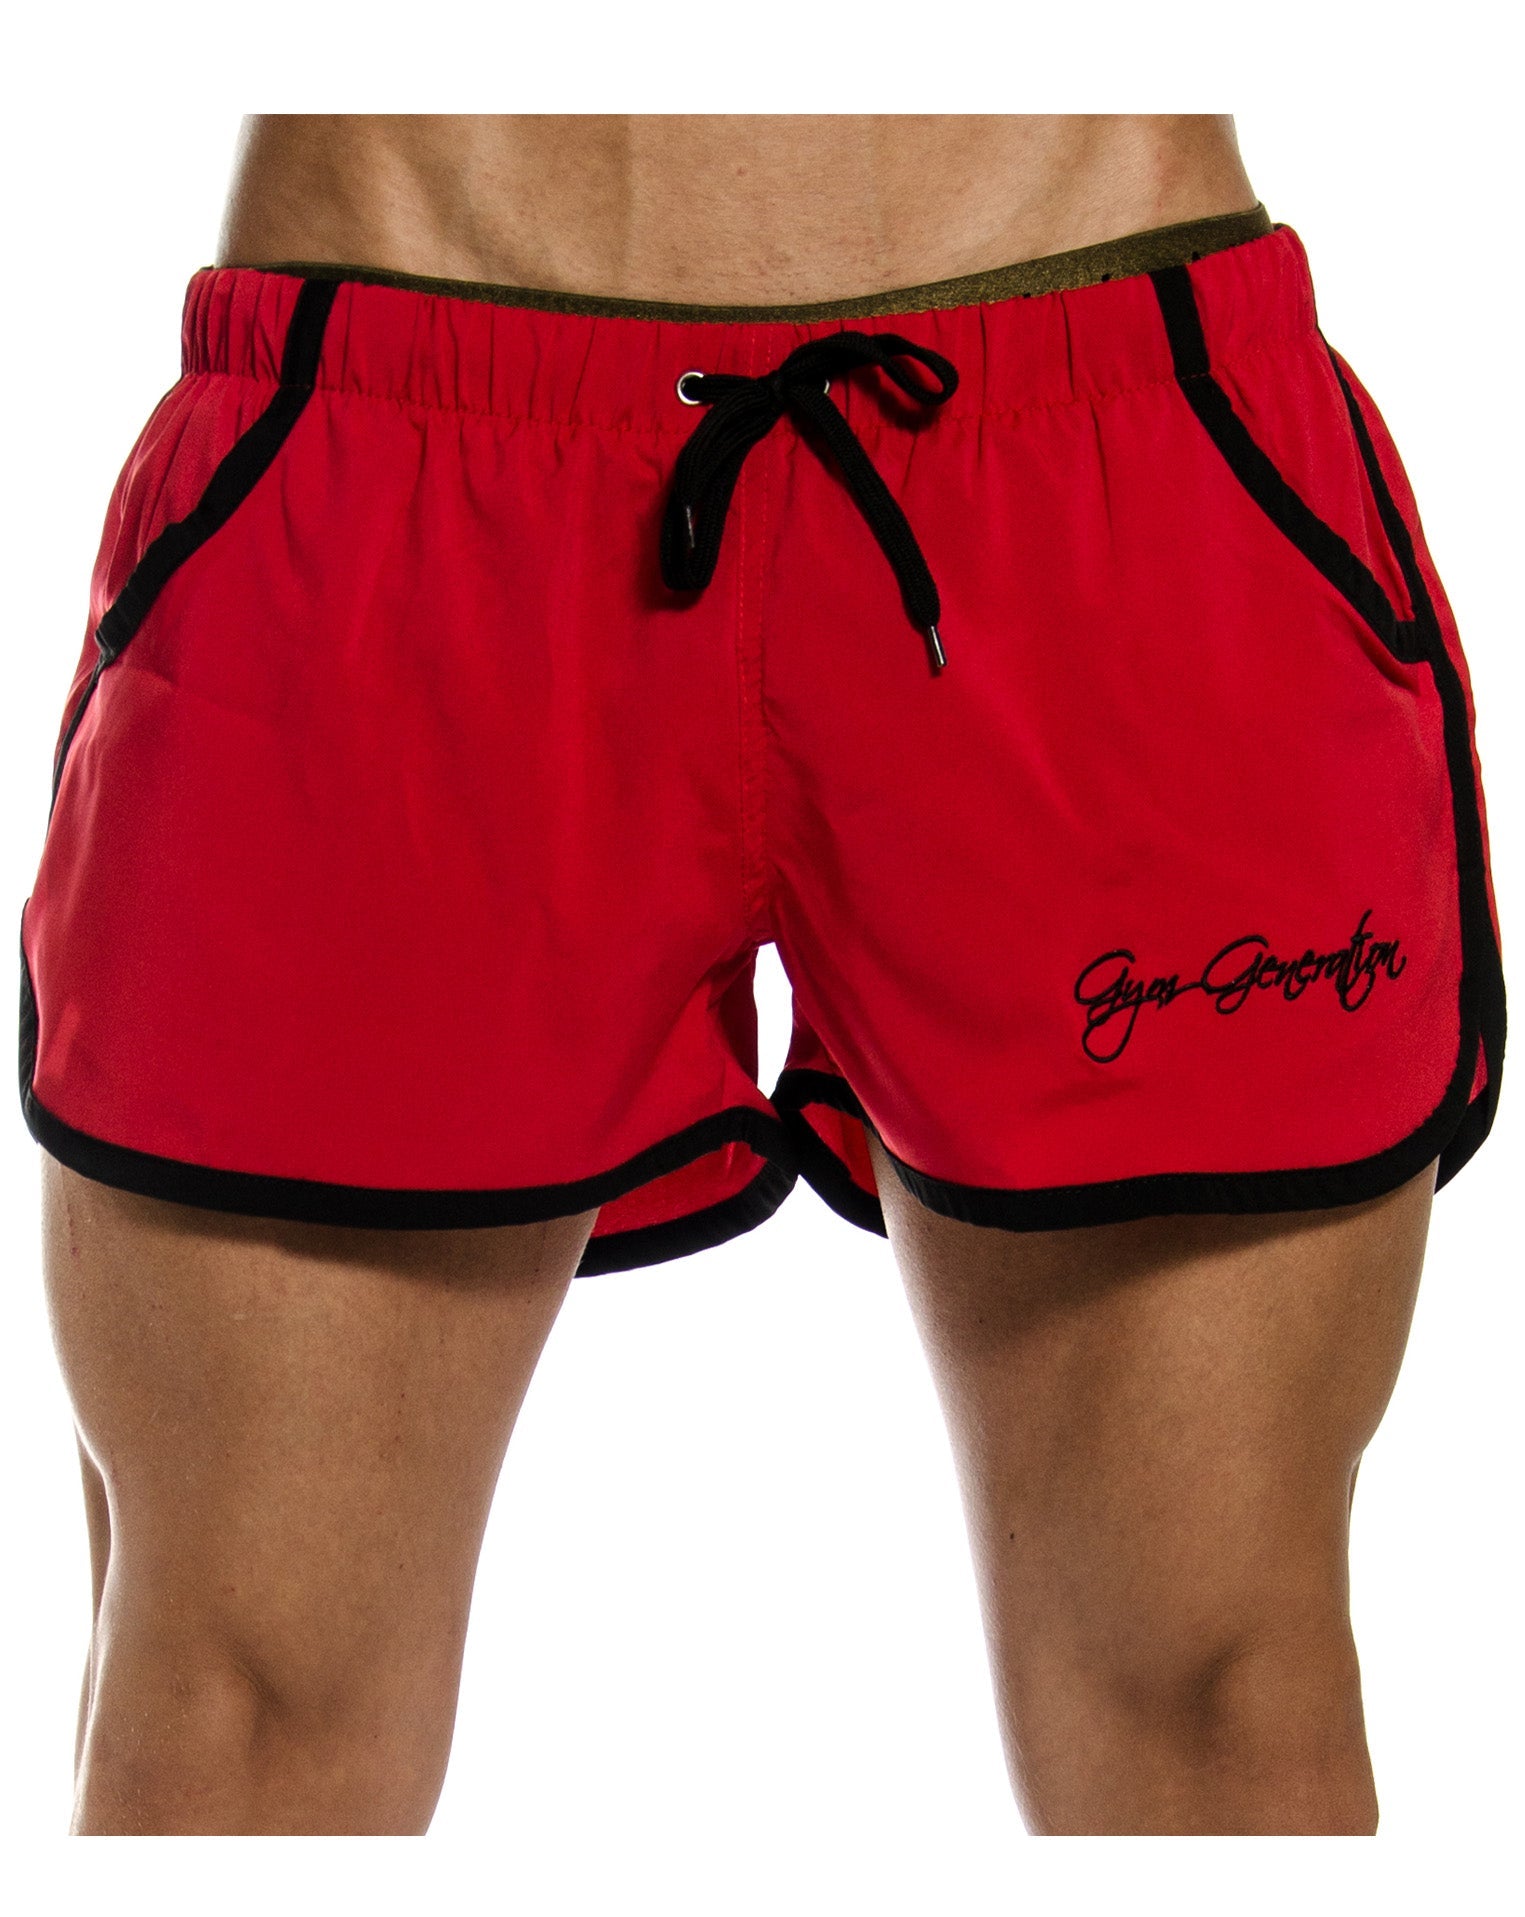 Pantalones cortos deportivos para hombre Pantalón corto sport en rojo | pantalones Zyzz Gym Generation®